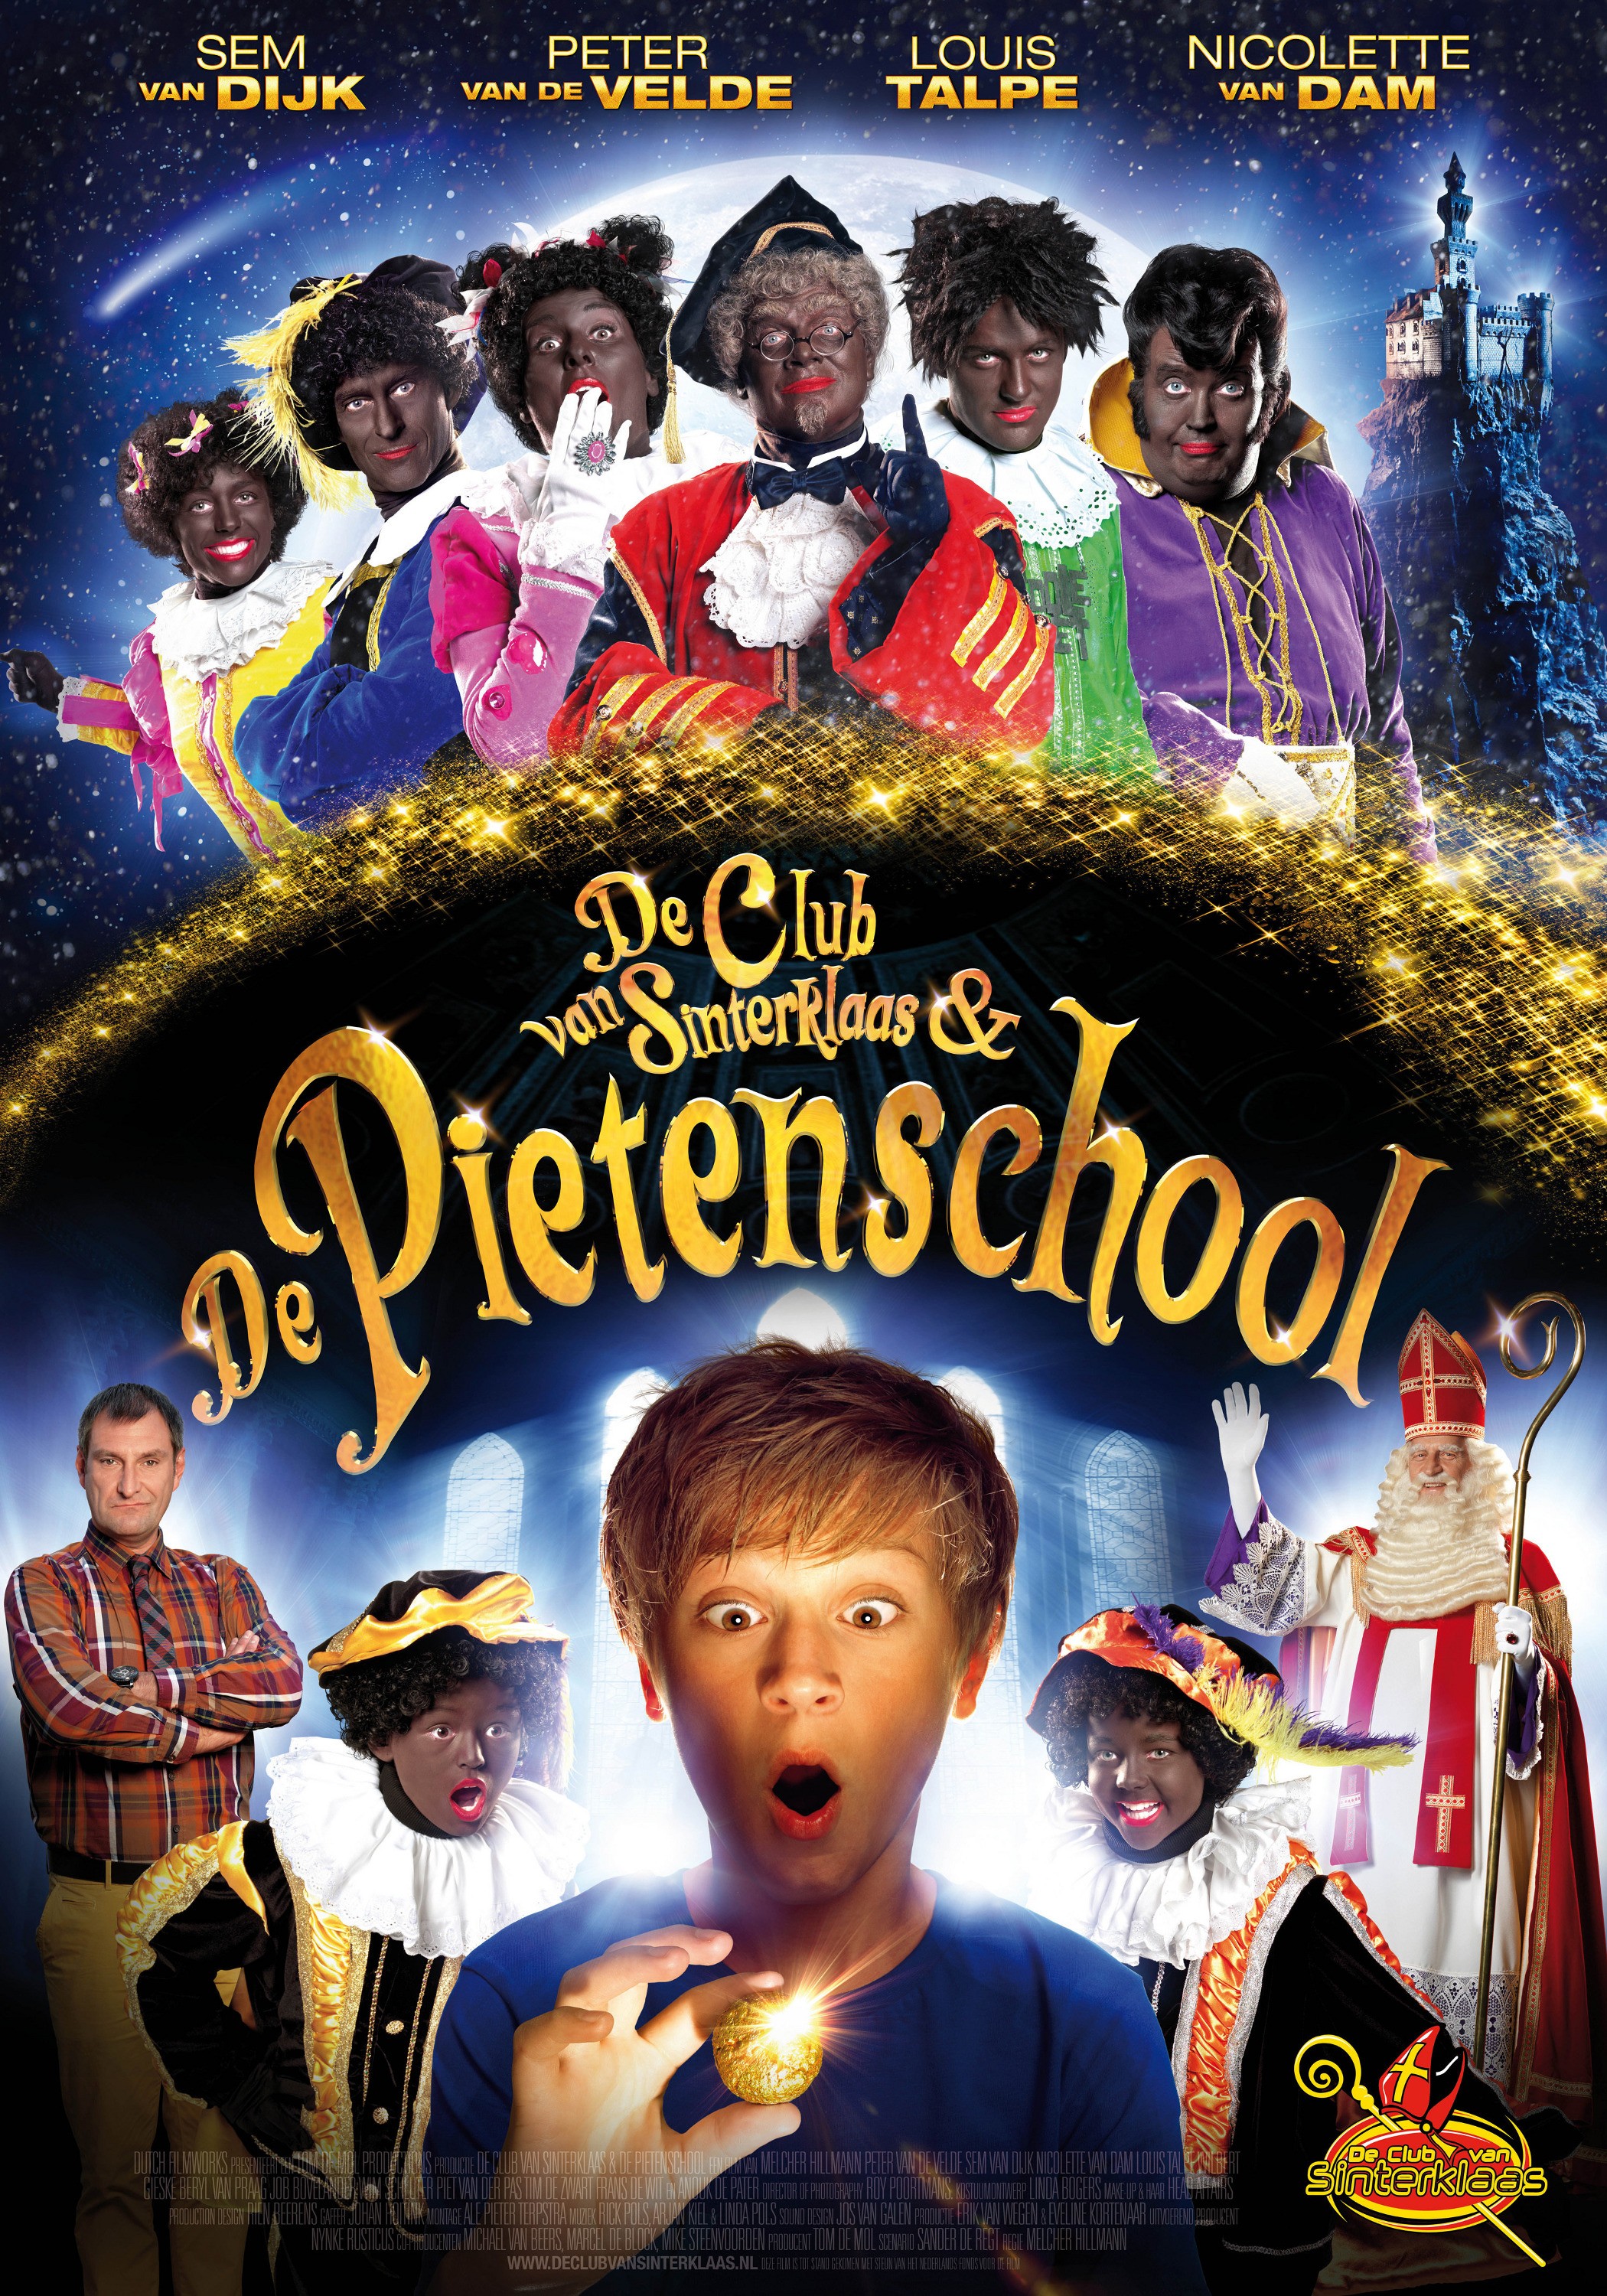 Mega Sized Movie Poster Image for De Club van Sinterklaas & De Pietenschool 